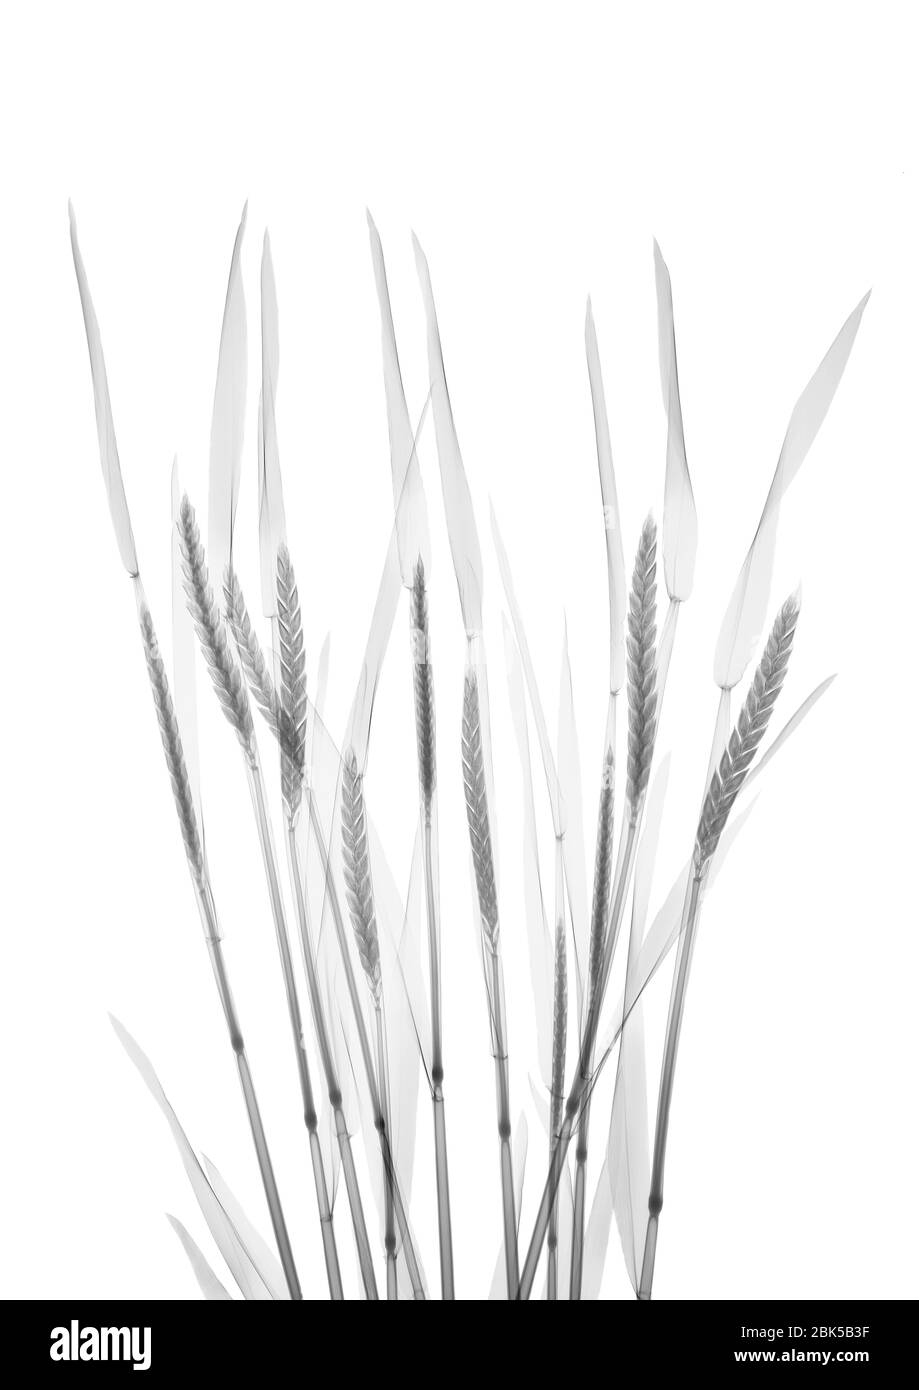 Wheat, X-ray. Stock Photo